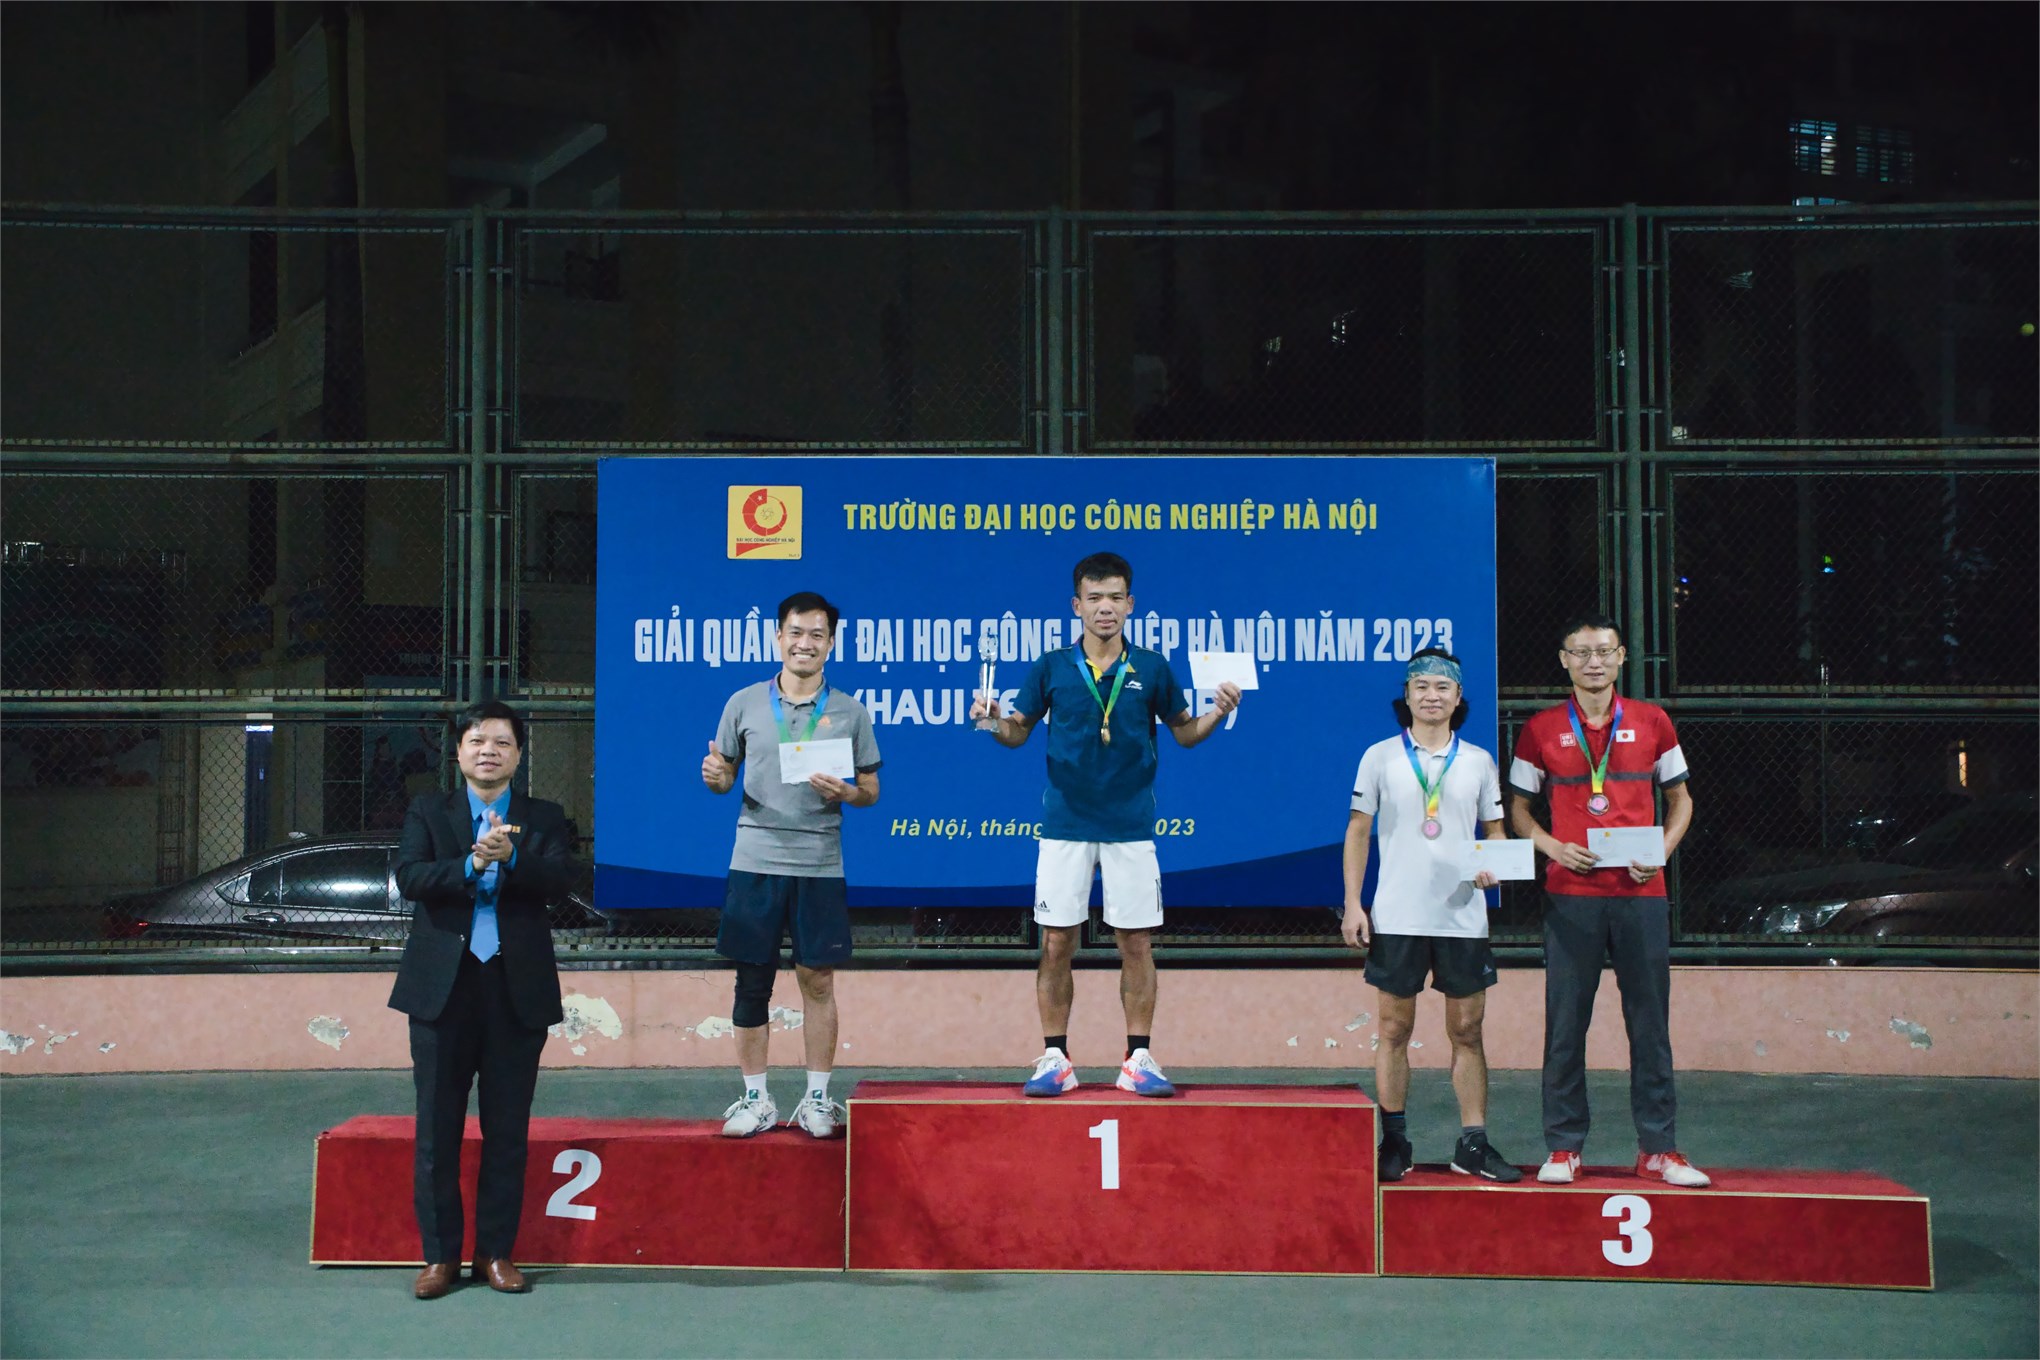 Chung kết Giải quần vợt Đại học Công nghiệp Hà Nội năm 2023